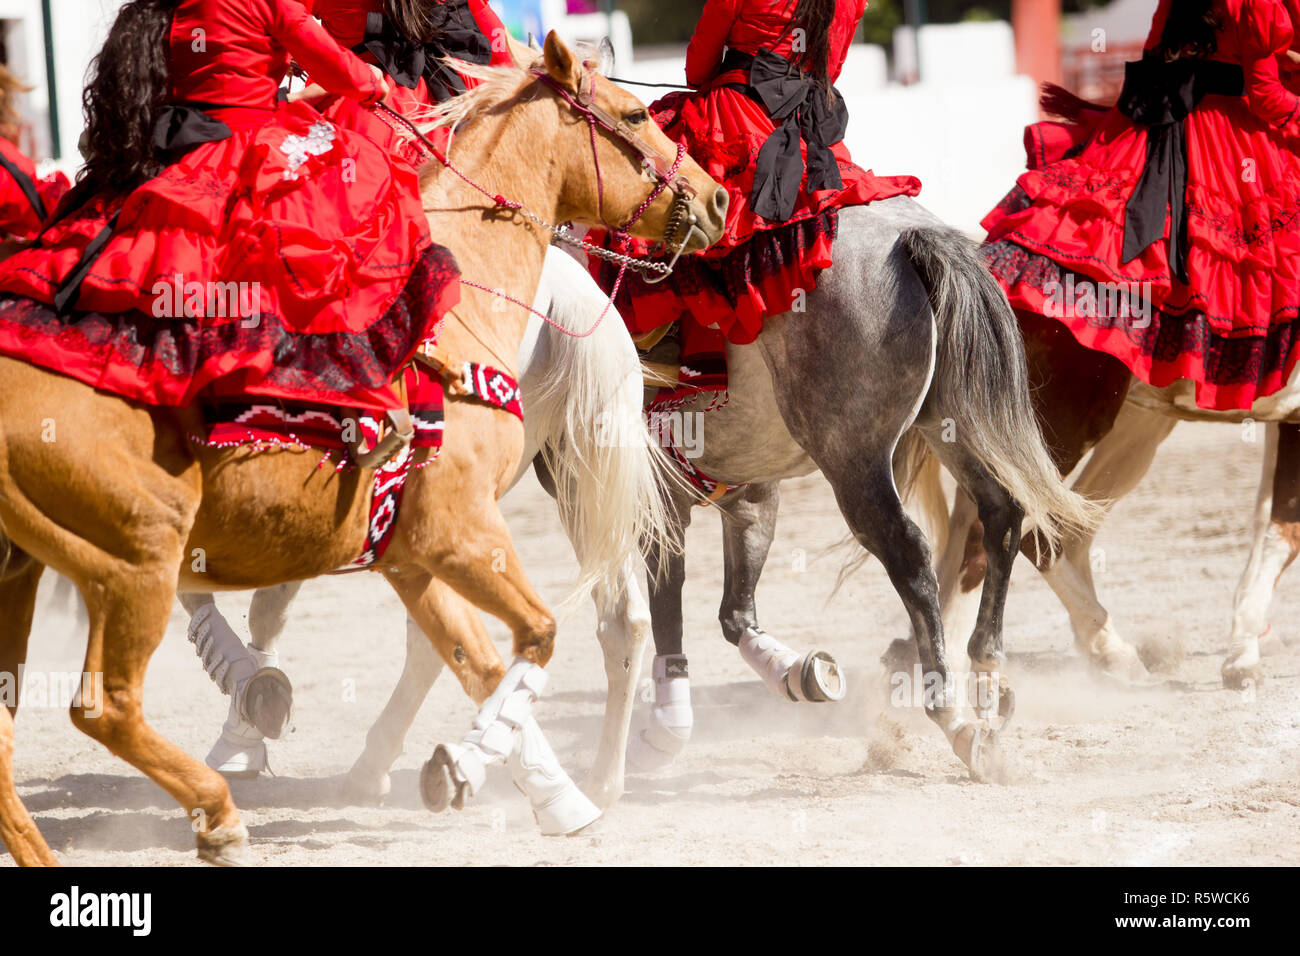 Gruppo di escaramuza messicano ragazze con rosso abiti messicano cavalcata cavallo su un rodeo Foto Stock